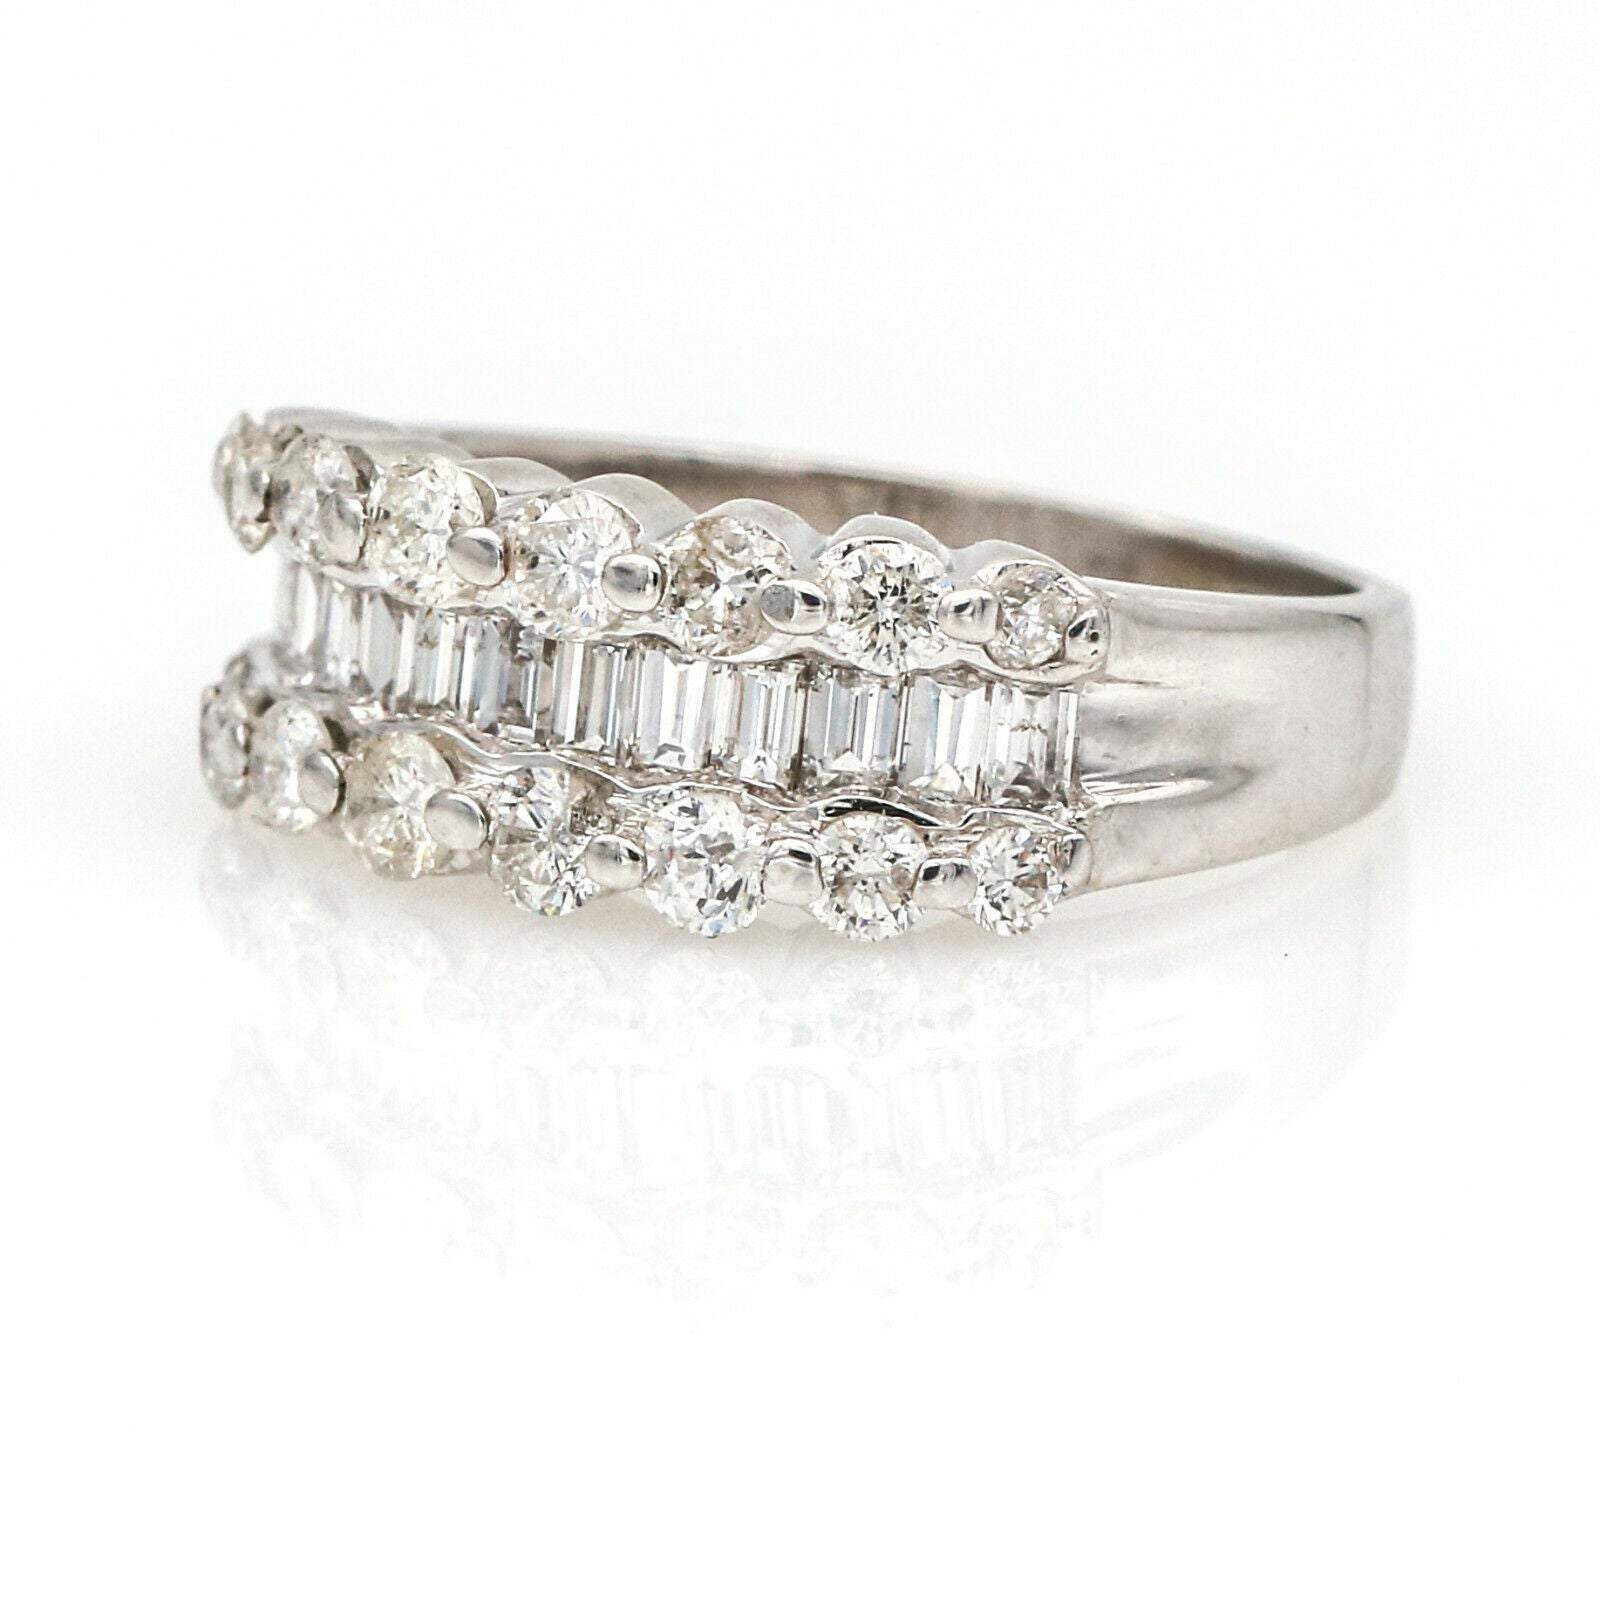 Women's Diamond Anniversary Band Ring in 14k White Gold 1.34 ct tw